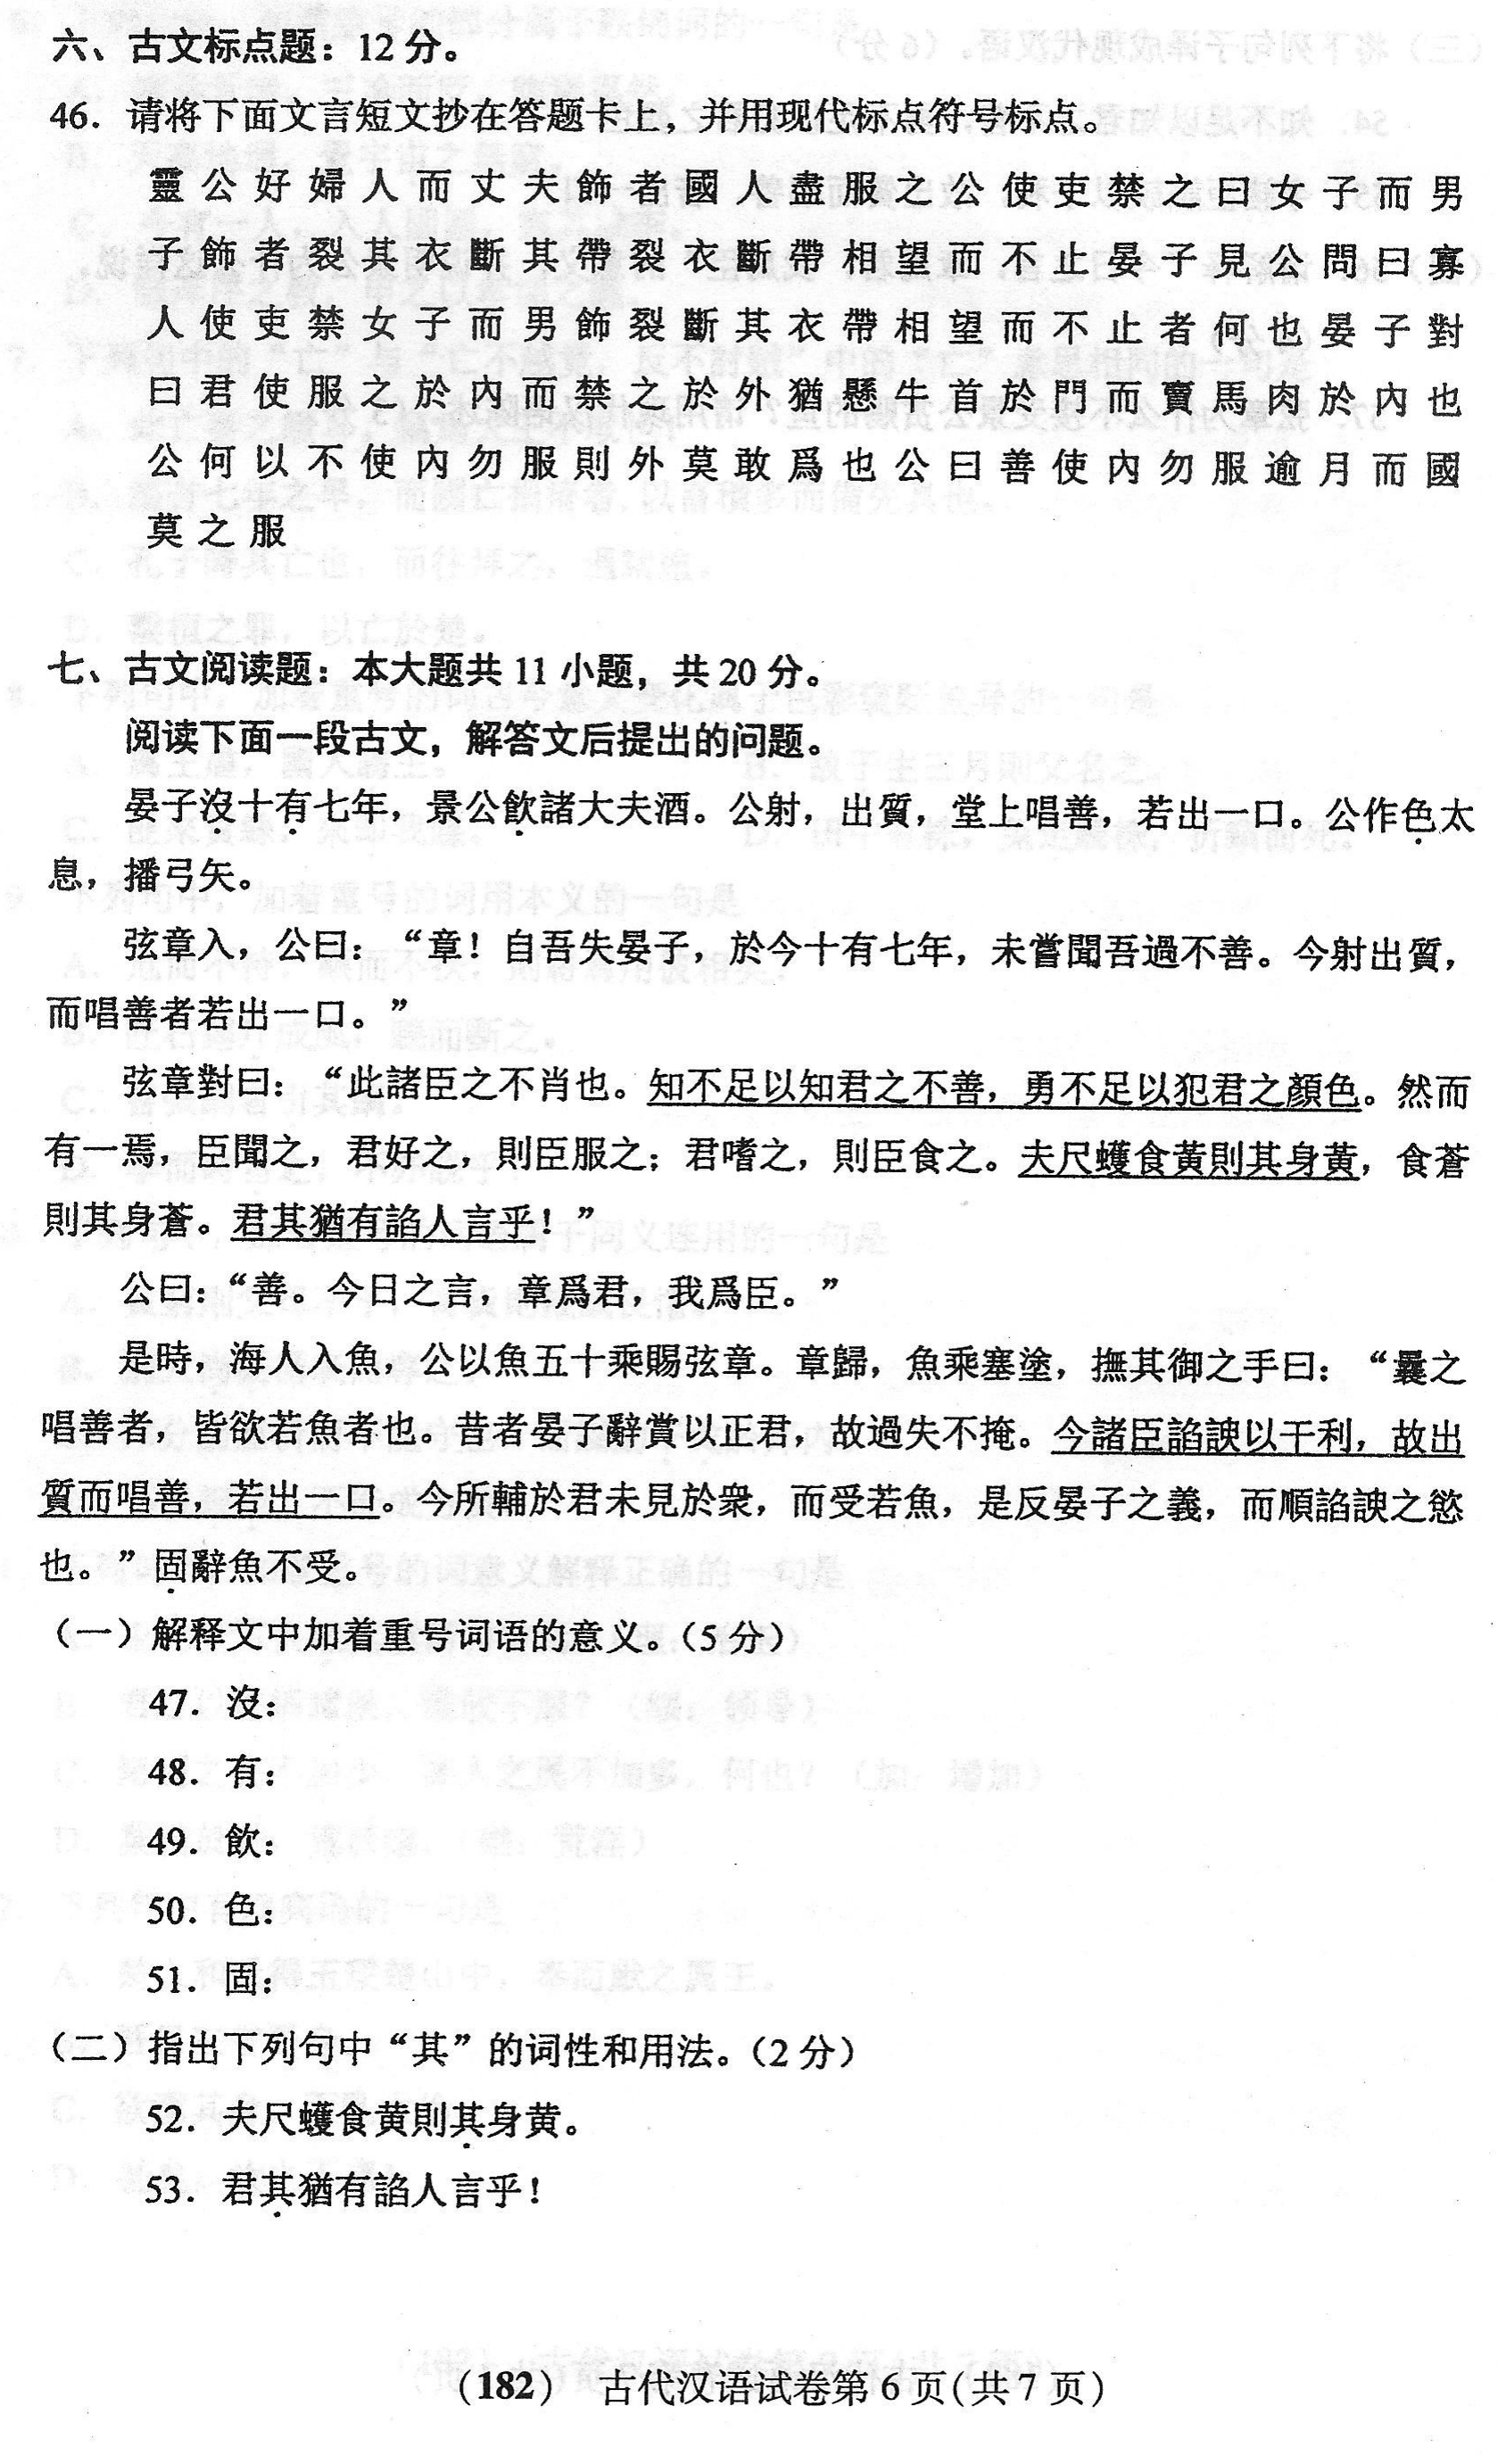 2018年04月贵州省自学考试00536古代汉语真题及答案